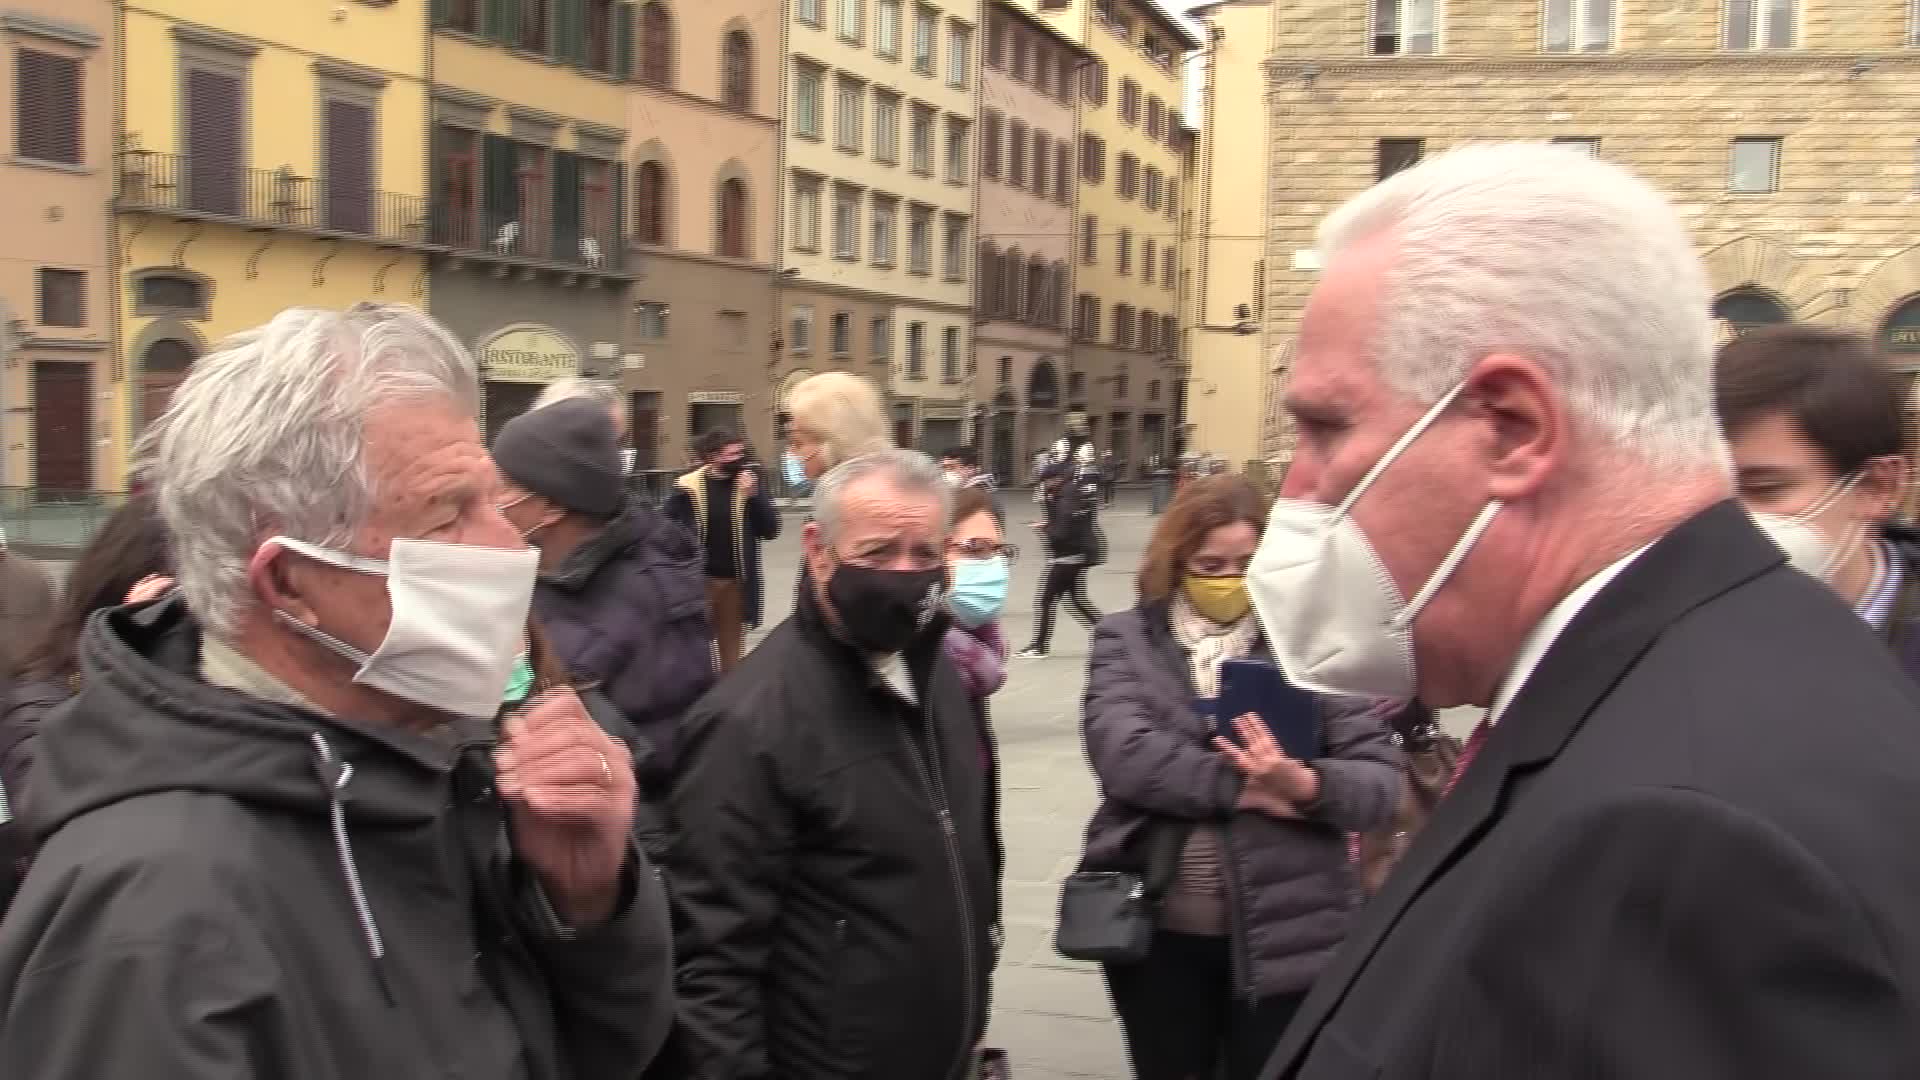 Vaccino, Giani contestato a Firenze: "Non ci dite le cose come stanno"